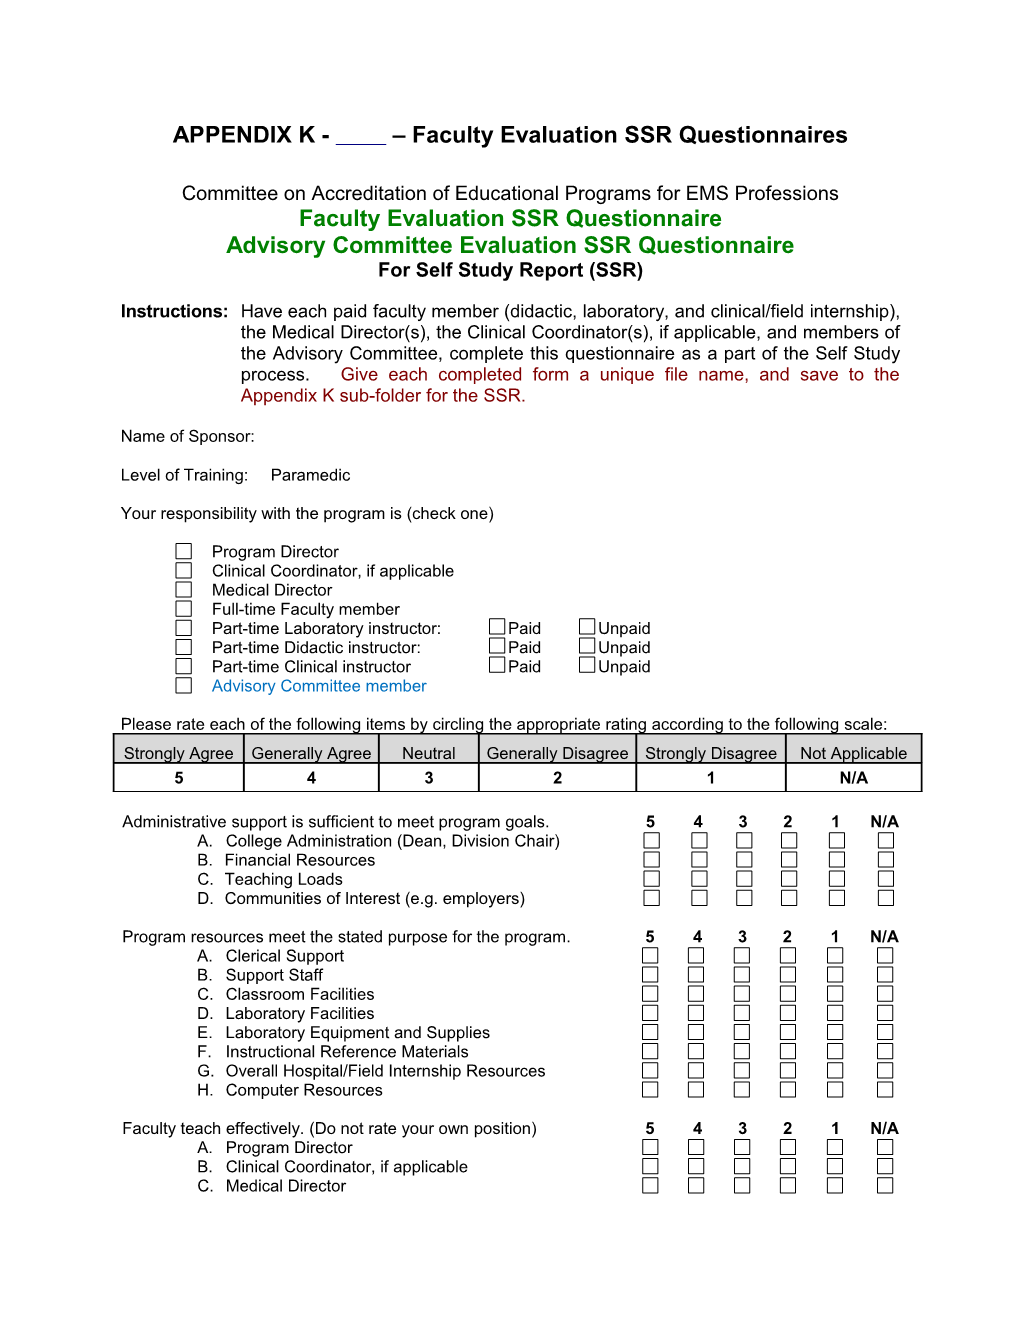 APPENDIX K - Faculty Evaluation SSR Questionnaires